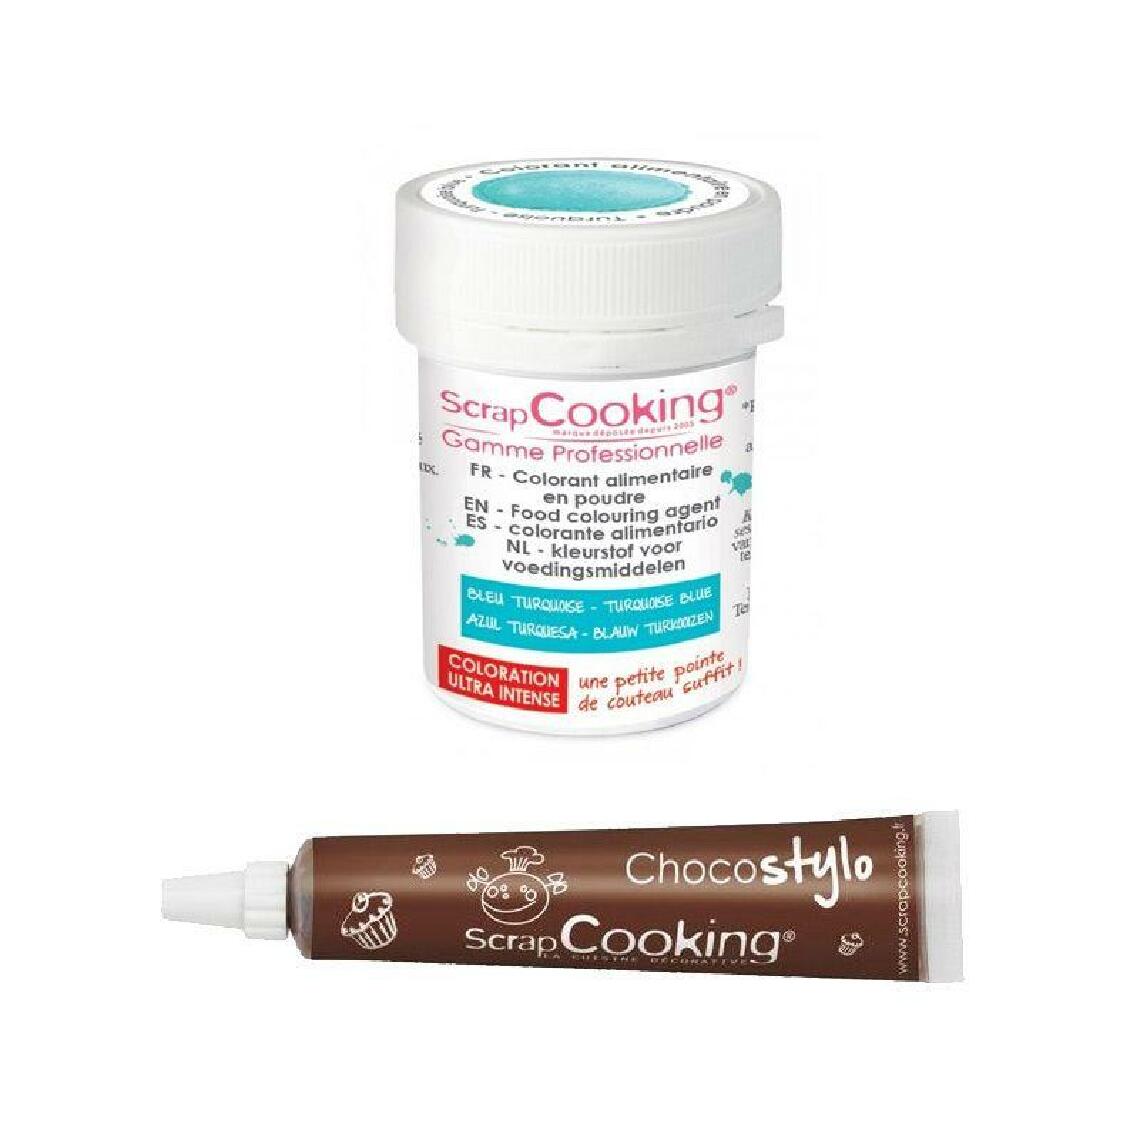 Scrapcooking - Stylo chocolat + Colorant alimentaire en poudre turquoise - Kits créatifs